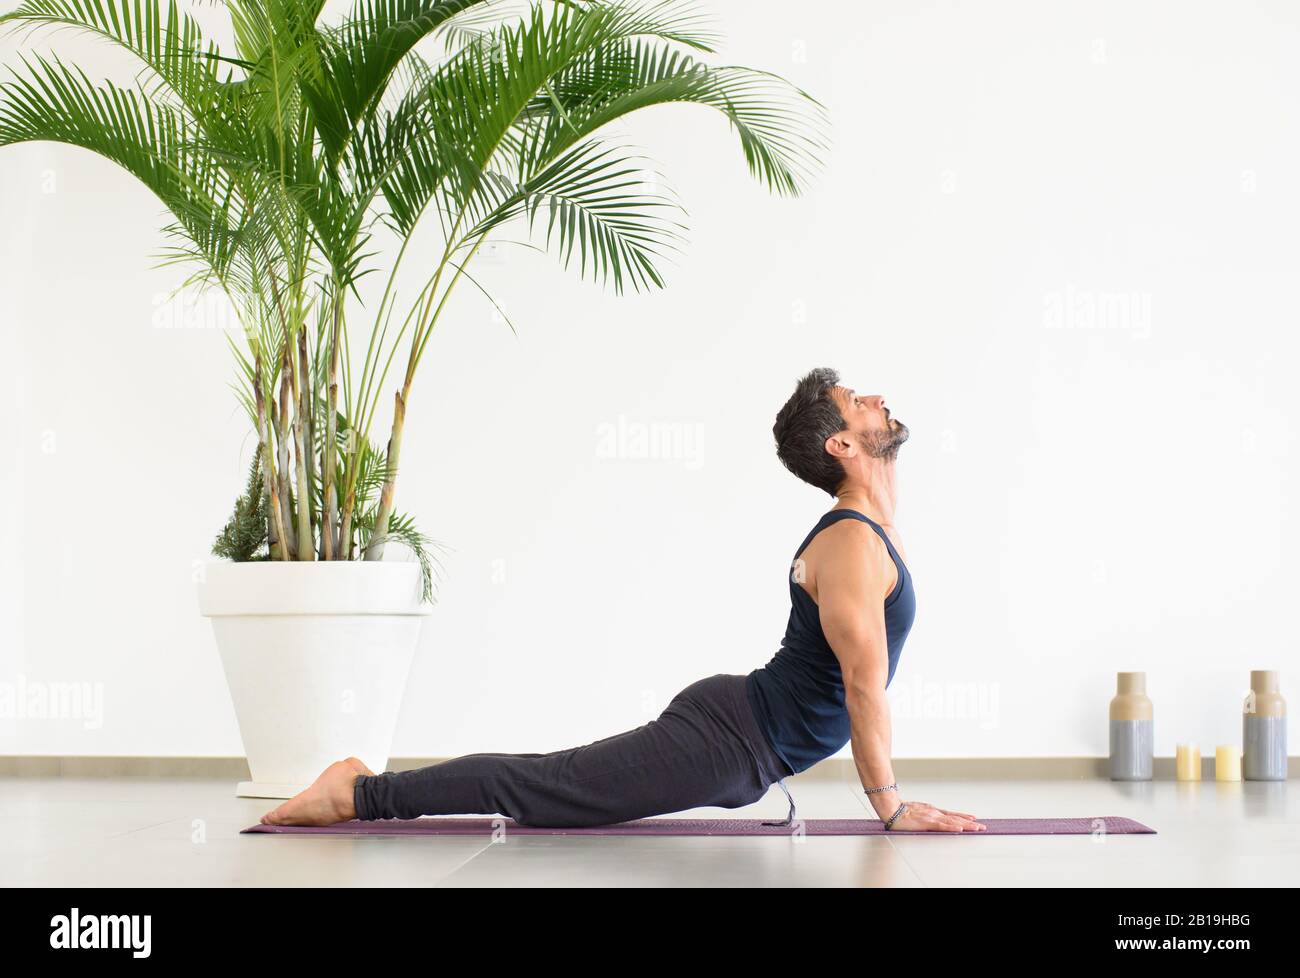 Hombre joven deportivo con ropa negra haciendo yoga perro hacia arriba posan, durante el ejercicio sobre la alfombra, visto desde el lado contra la pared blanca y en maceta Foto de stock